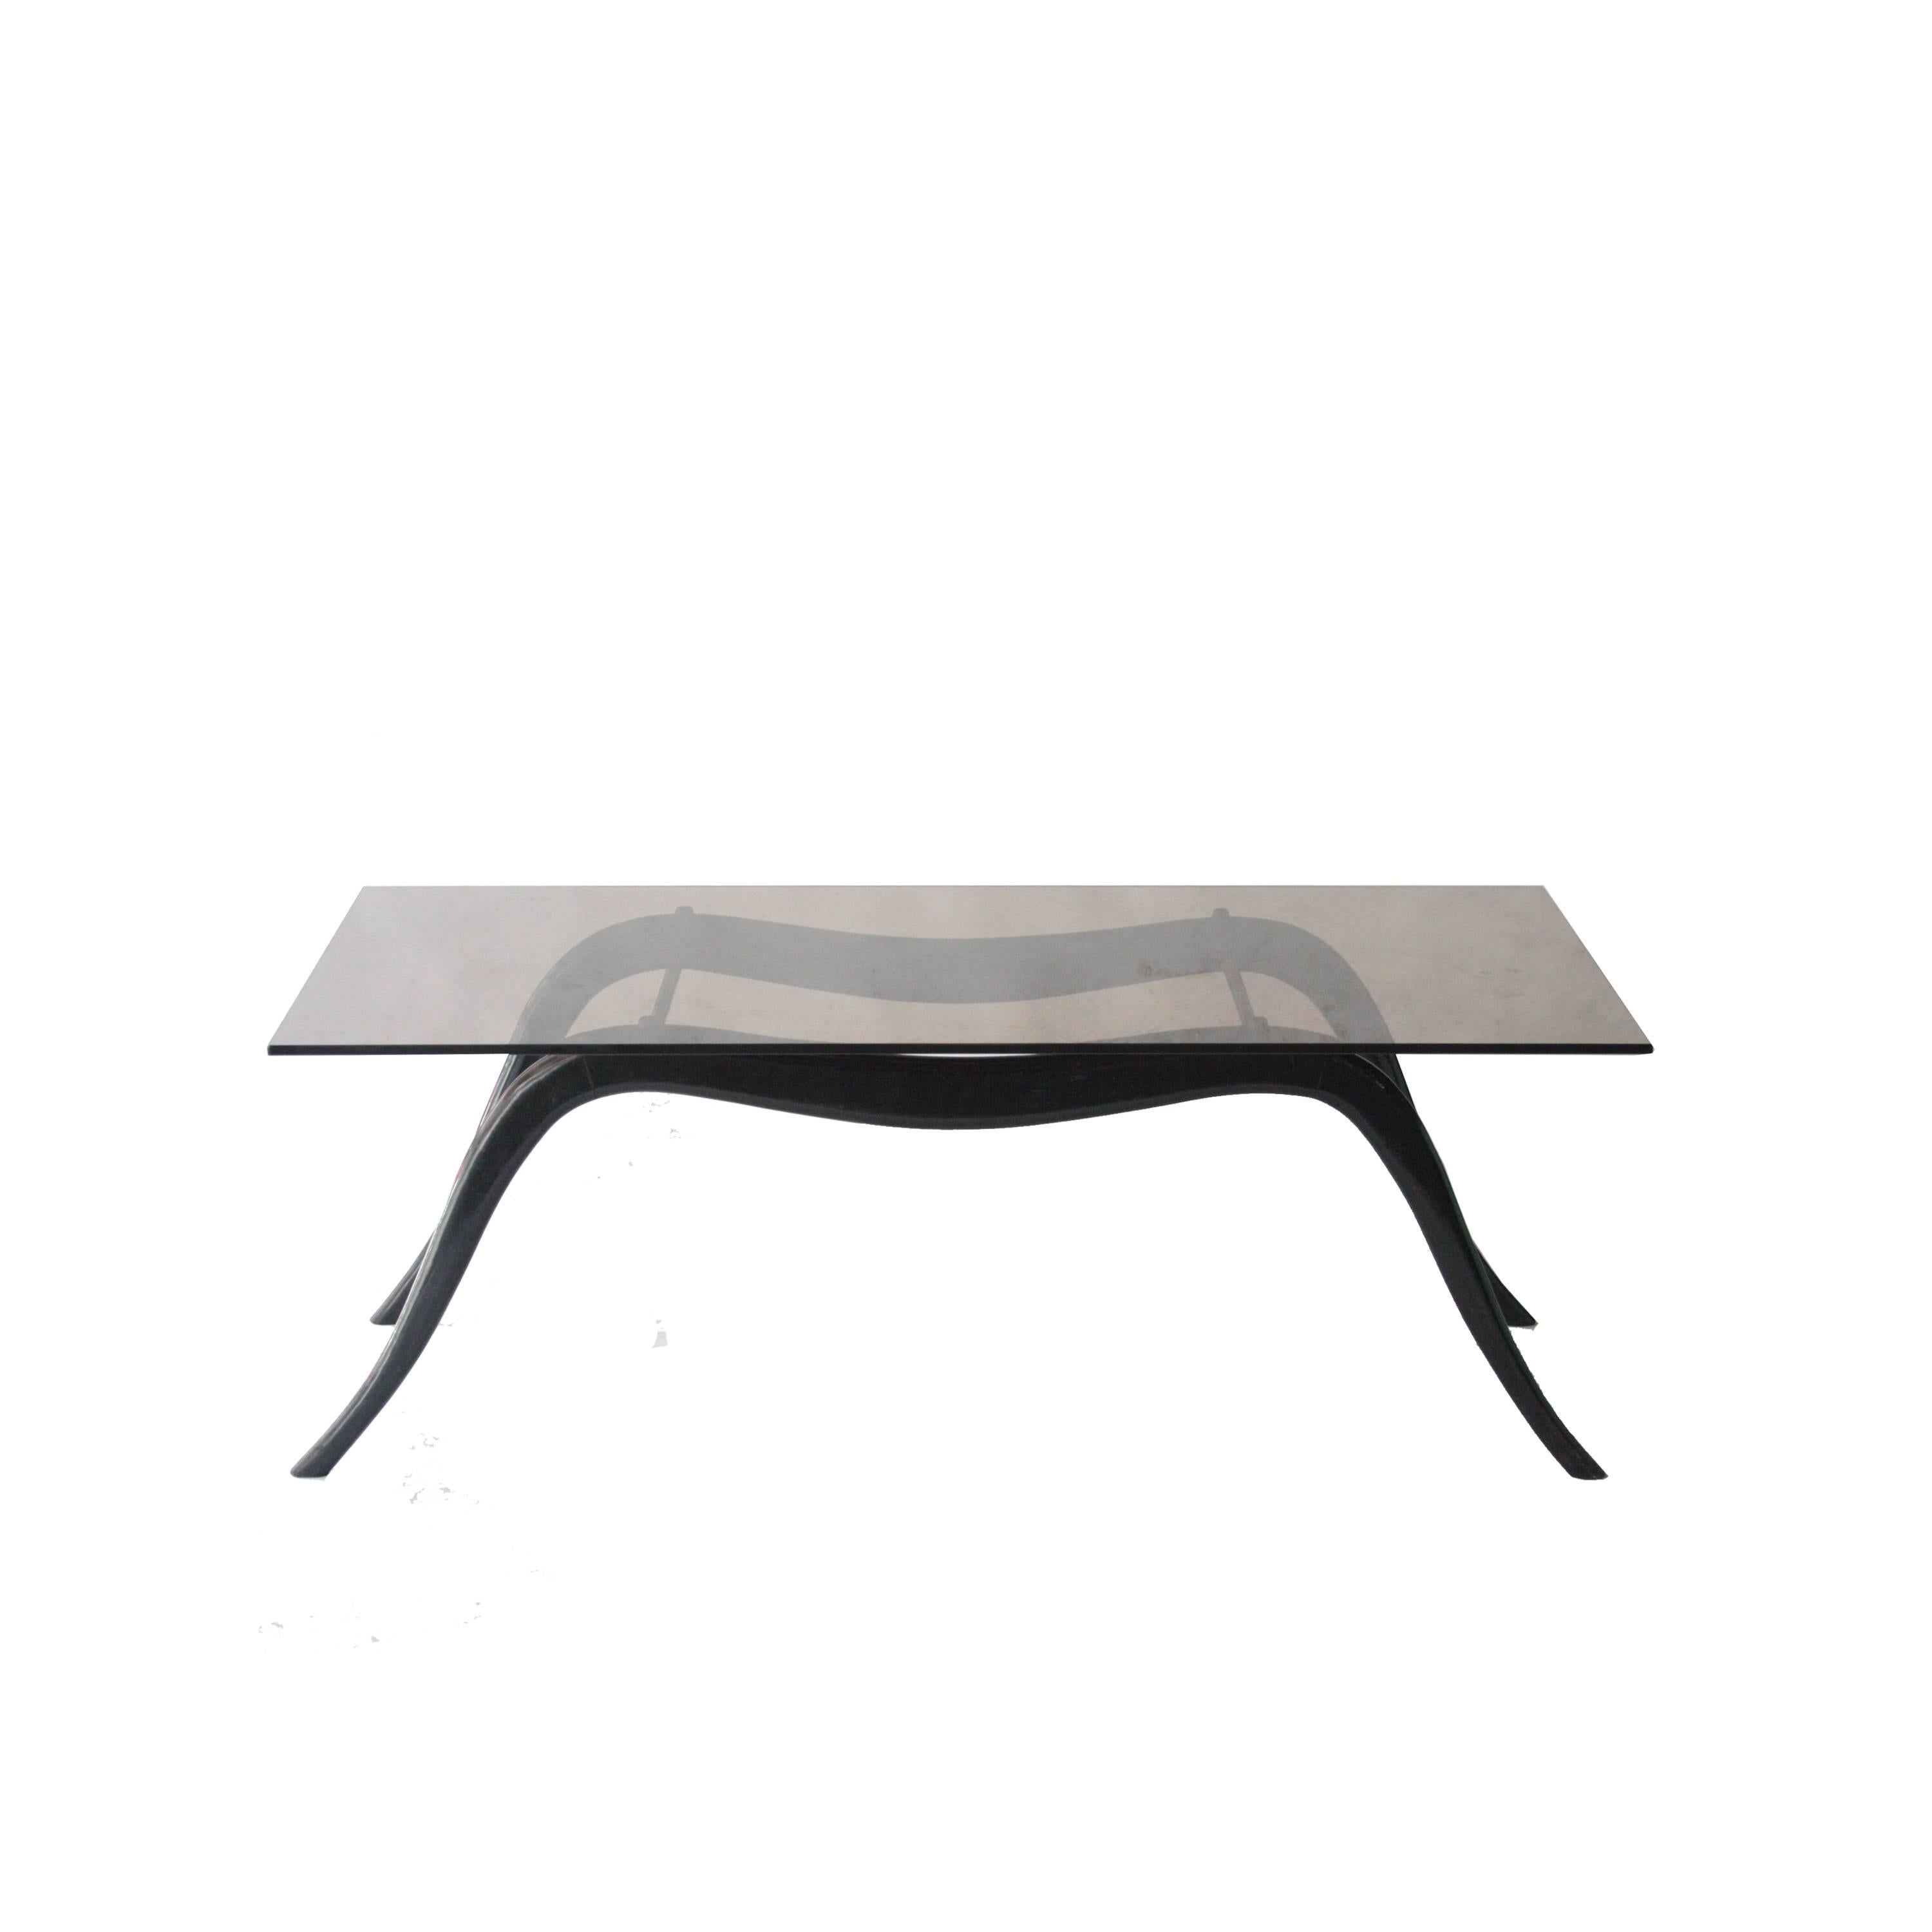 Ico Parisi zugeschriebener Mitteltisch mit Struktur aus schwarz lackiertem Massivholz, Messing und schwarzer Rauchglasplatte.